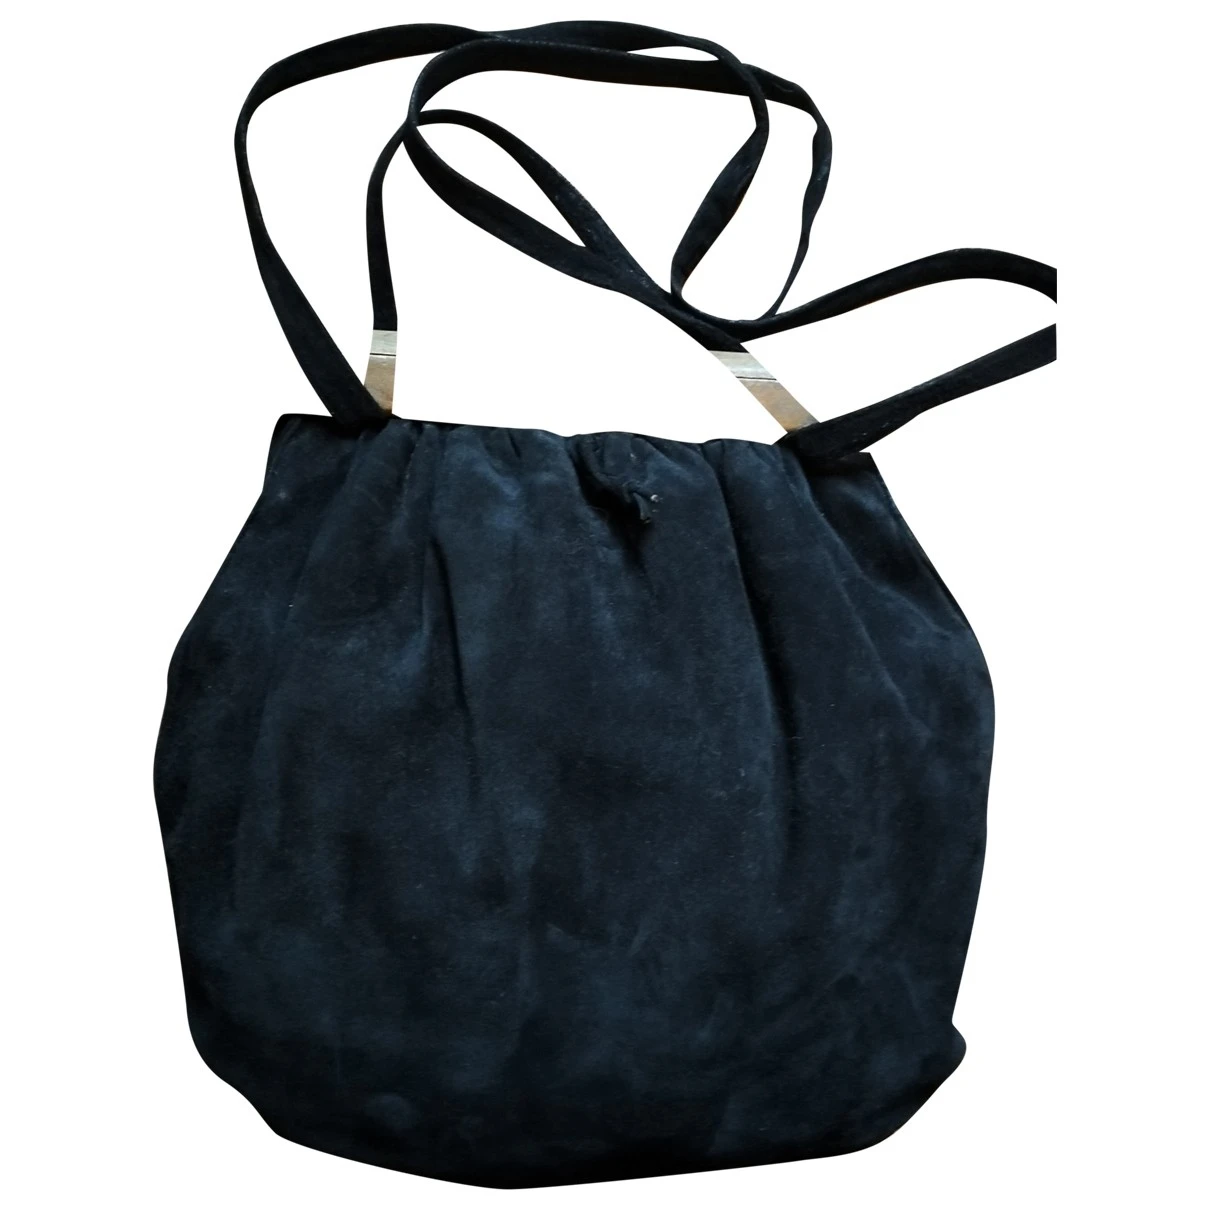 Pre-owned Bottega Veneta Handbag In Black